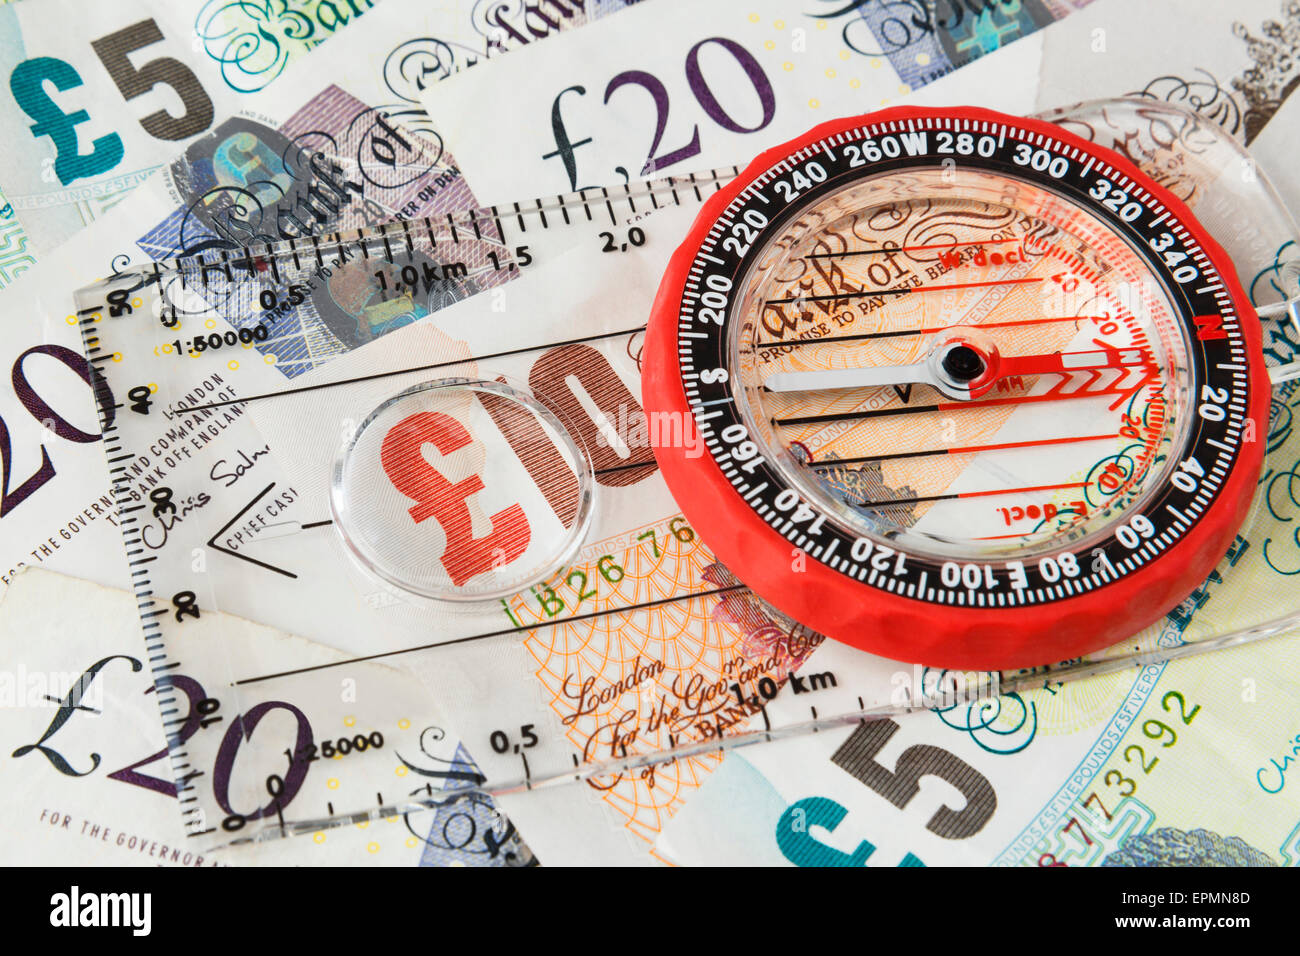 Boussole l'accent sur l'argent sterling pound note pour illustrer le sens de l'économie britannique après la croissance financière et Brexit concept. Angleterre Royaume-uni Grande-Bretagne Banque D'Images